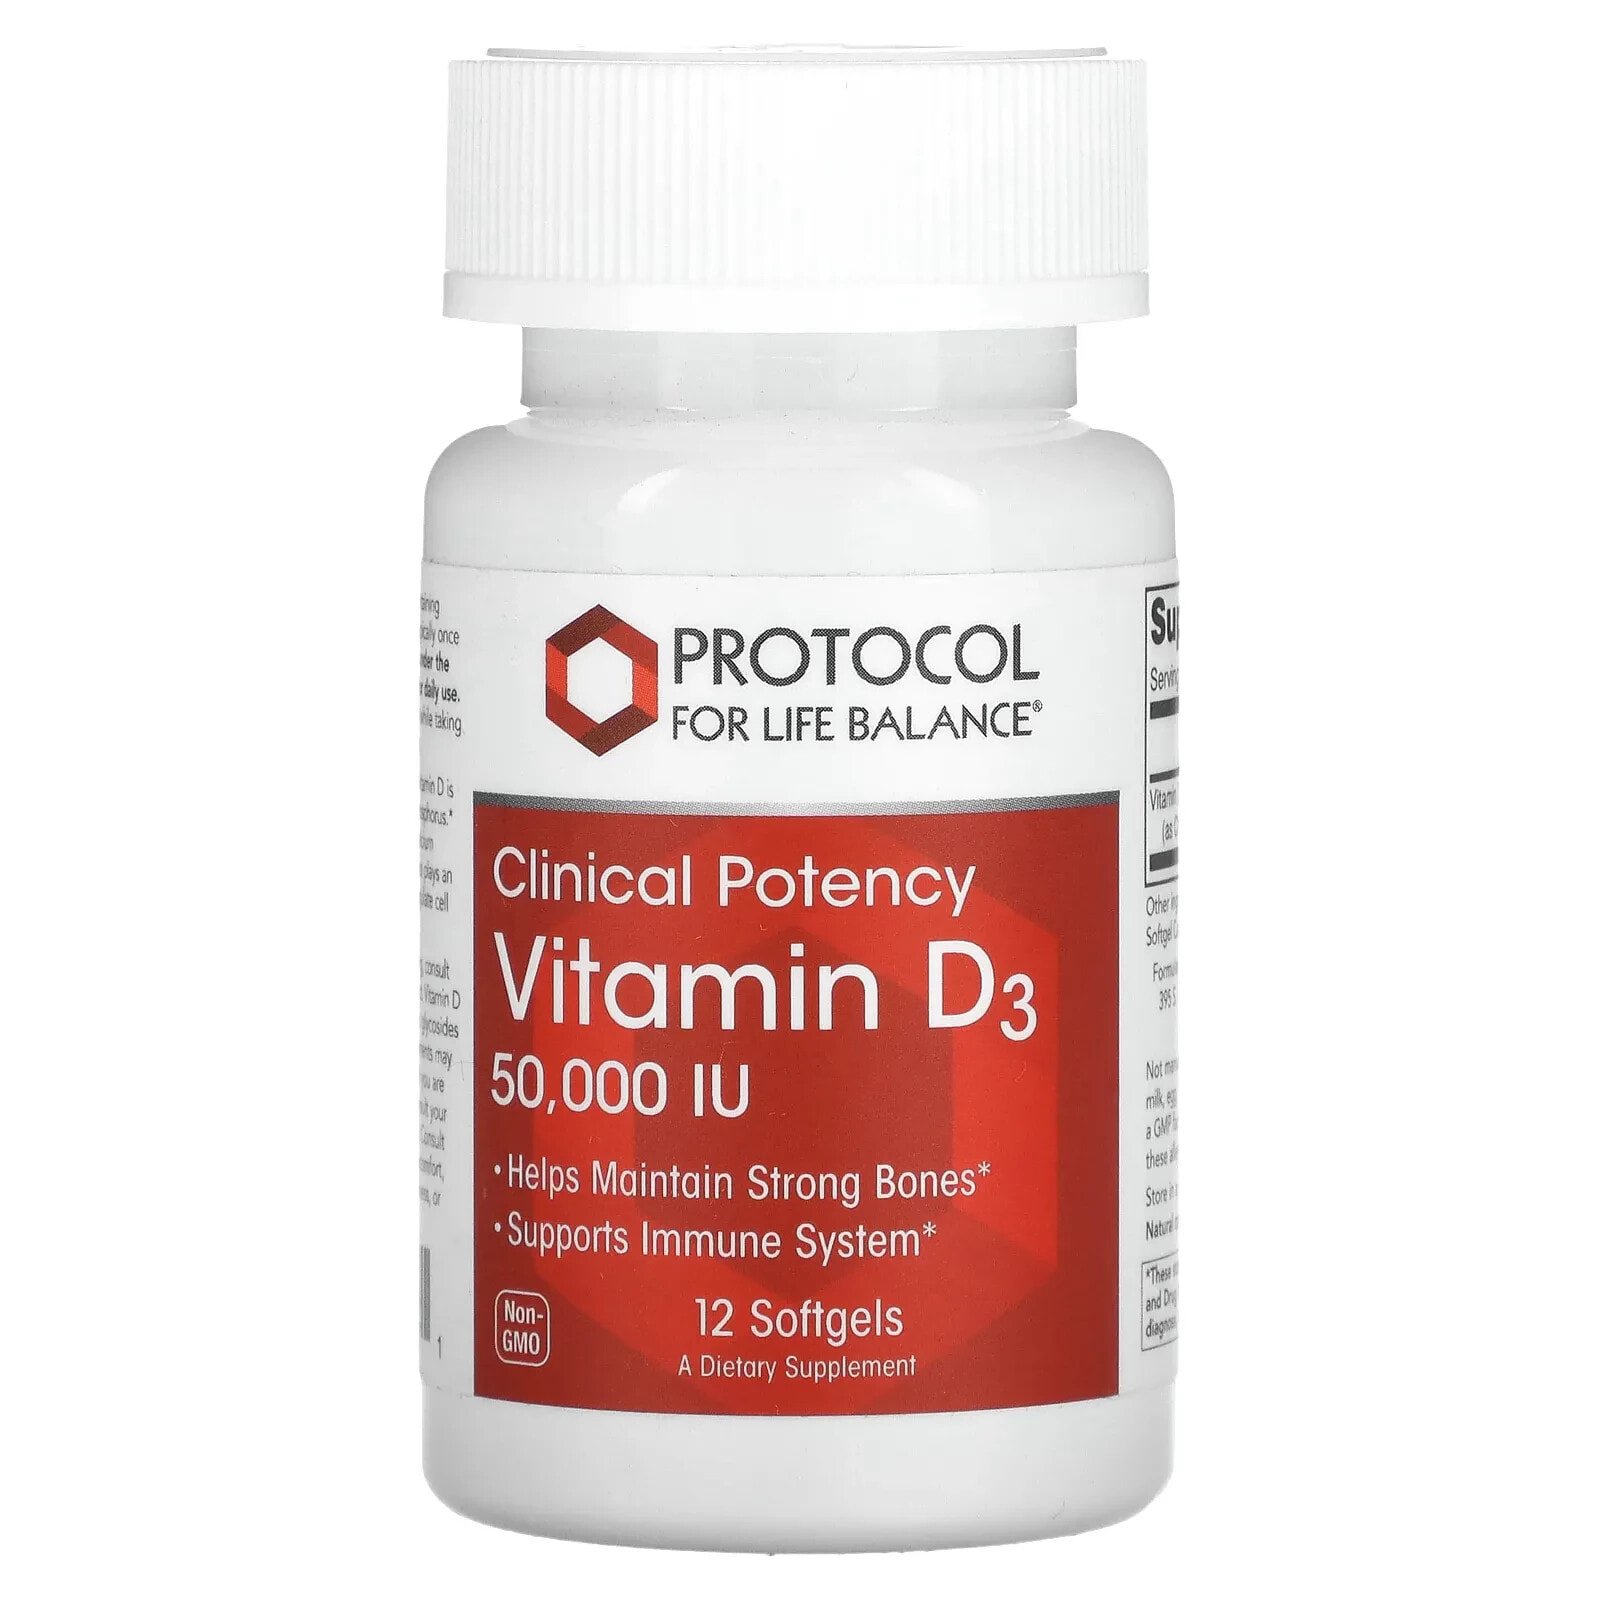 Vitamin D3, Clinical Potency, 50,000 IU, 12 Softgels